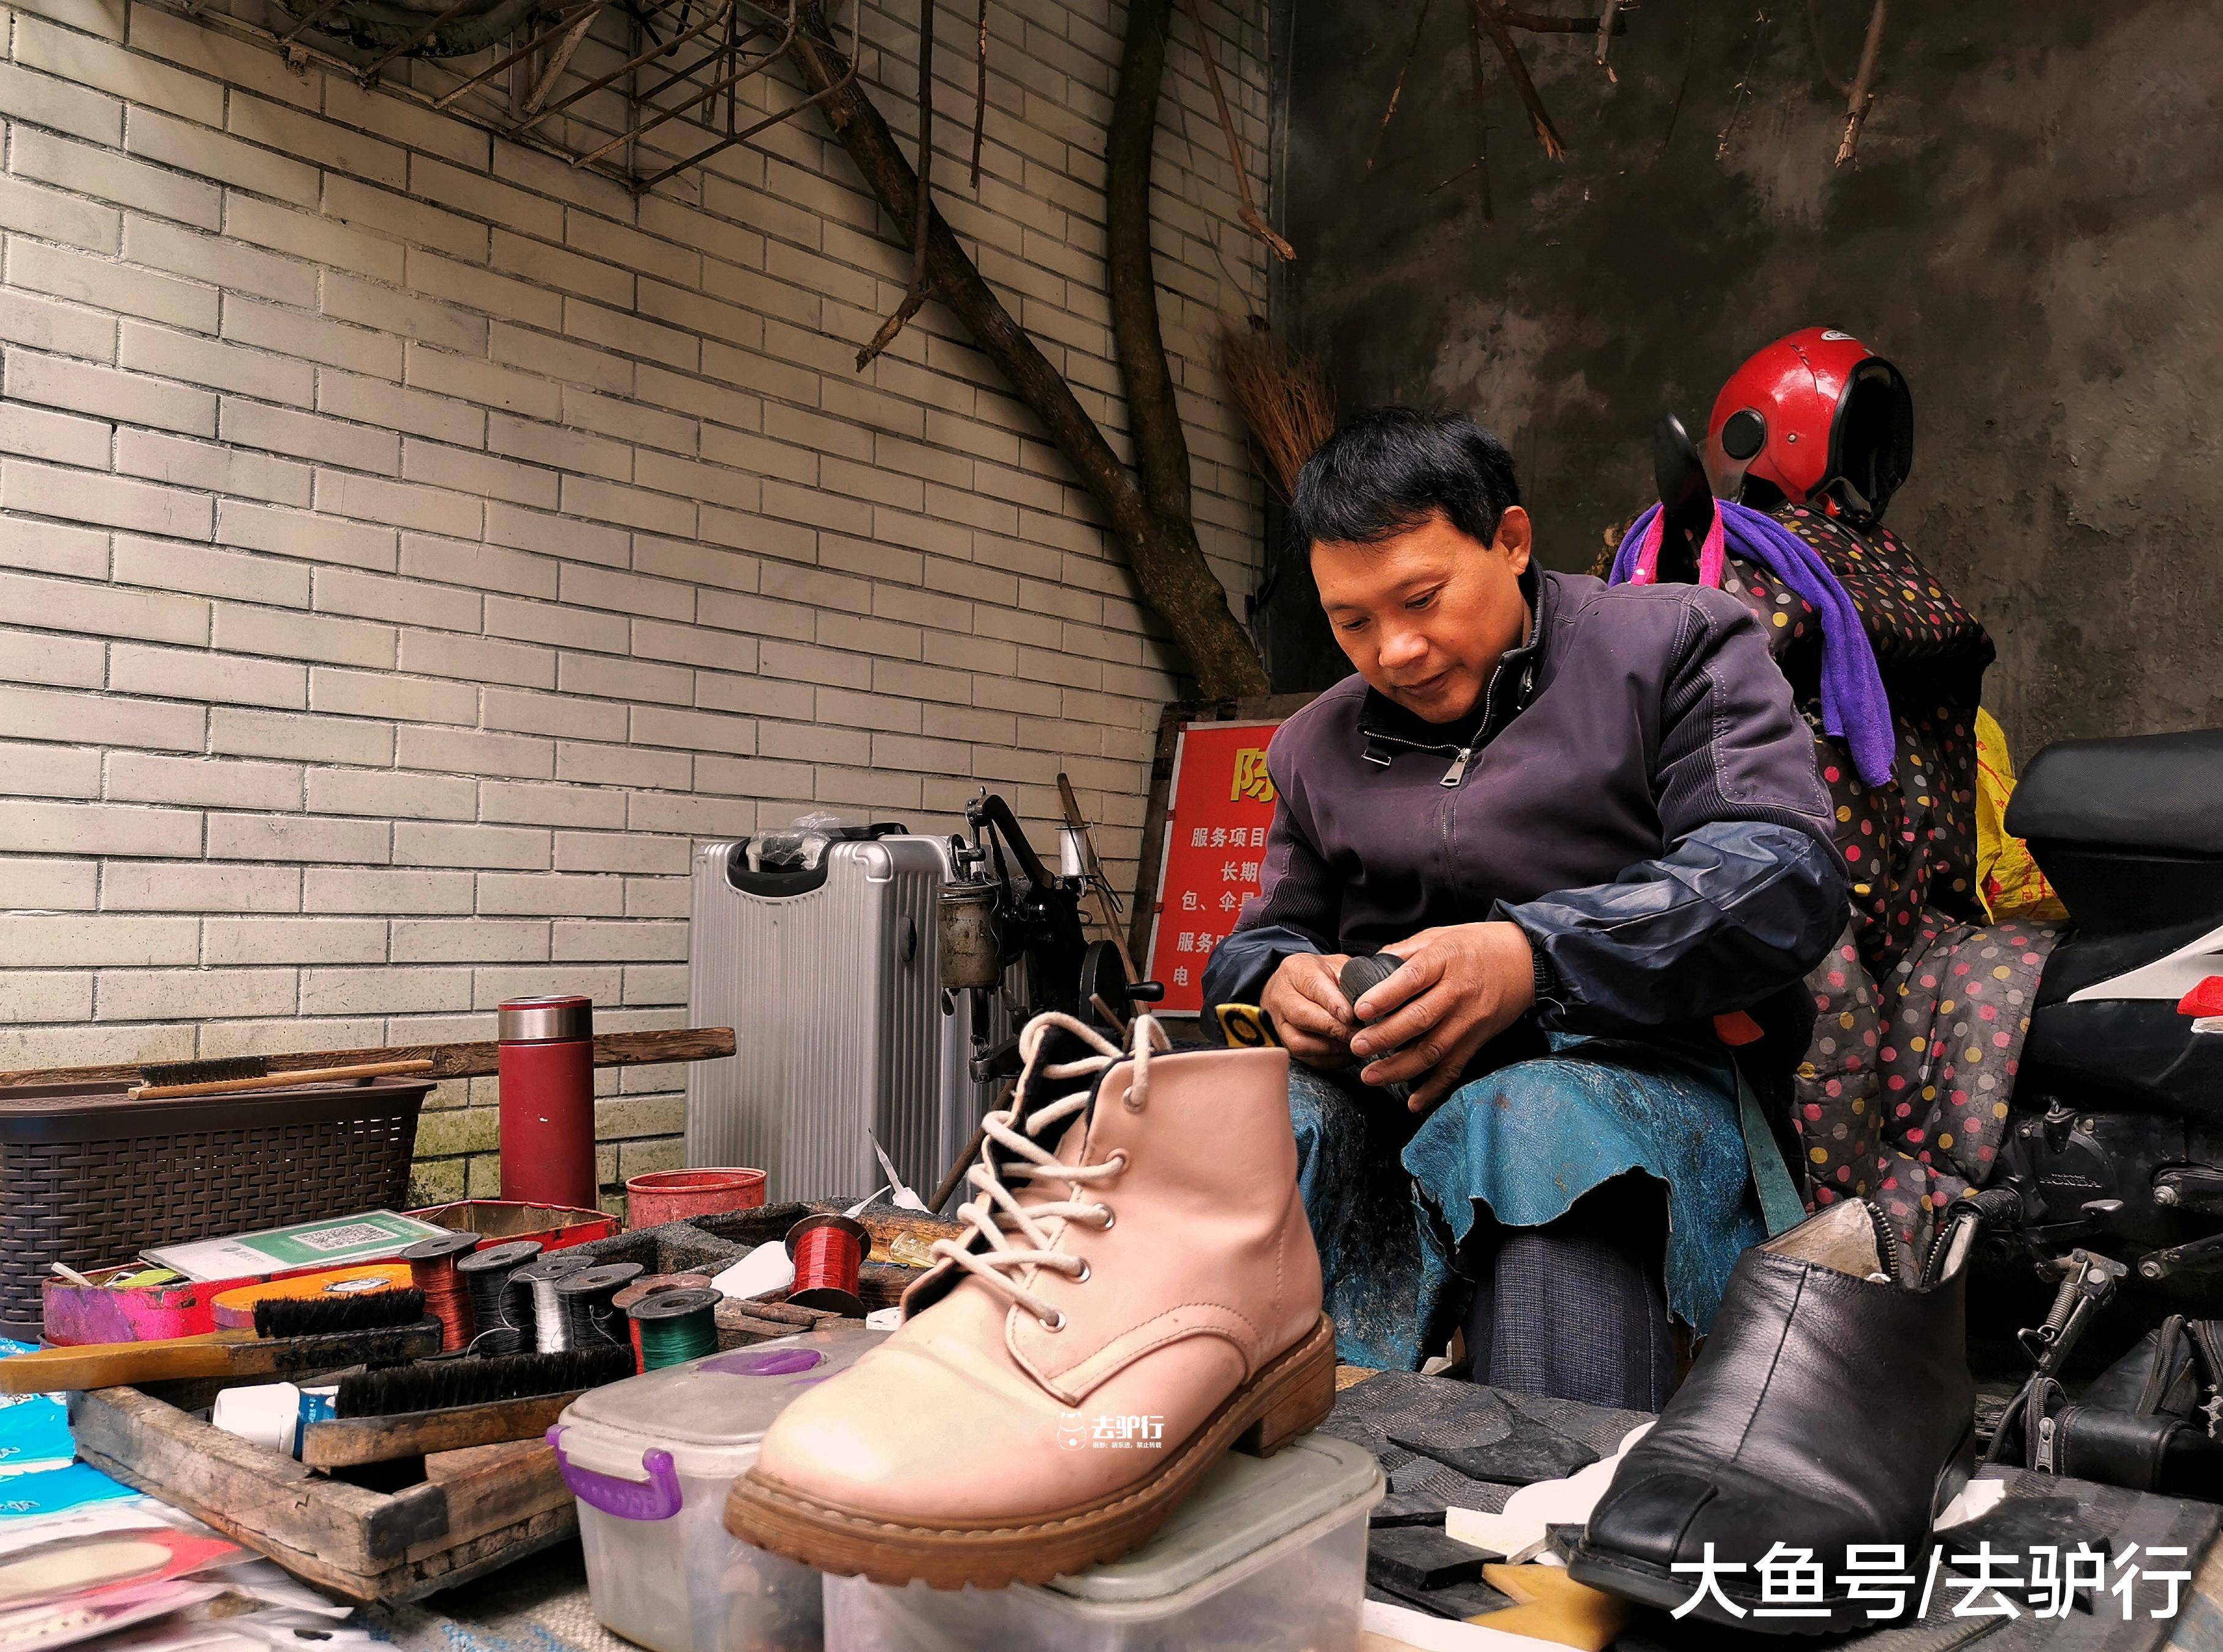 四川老街修鞋匠:不懂啥叫工匠精神,只想把鞋修好,见不得浪费